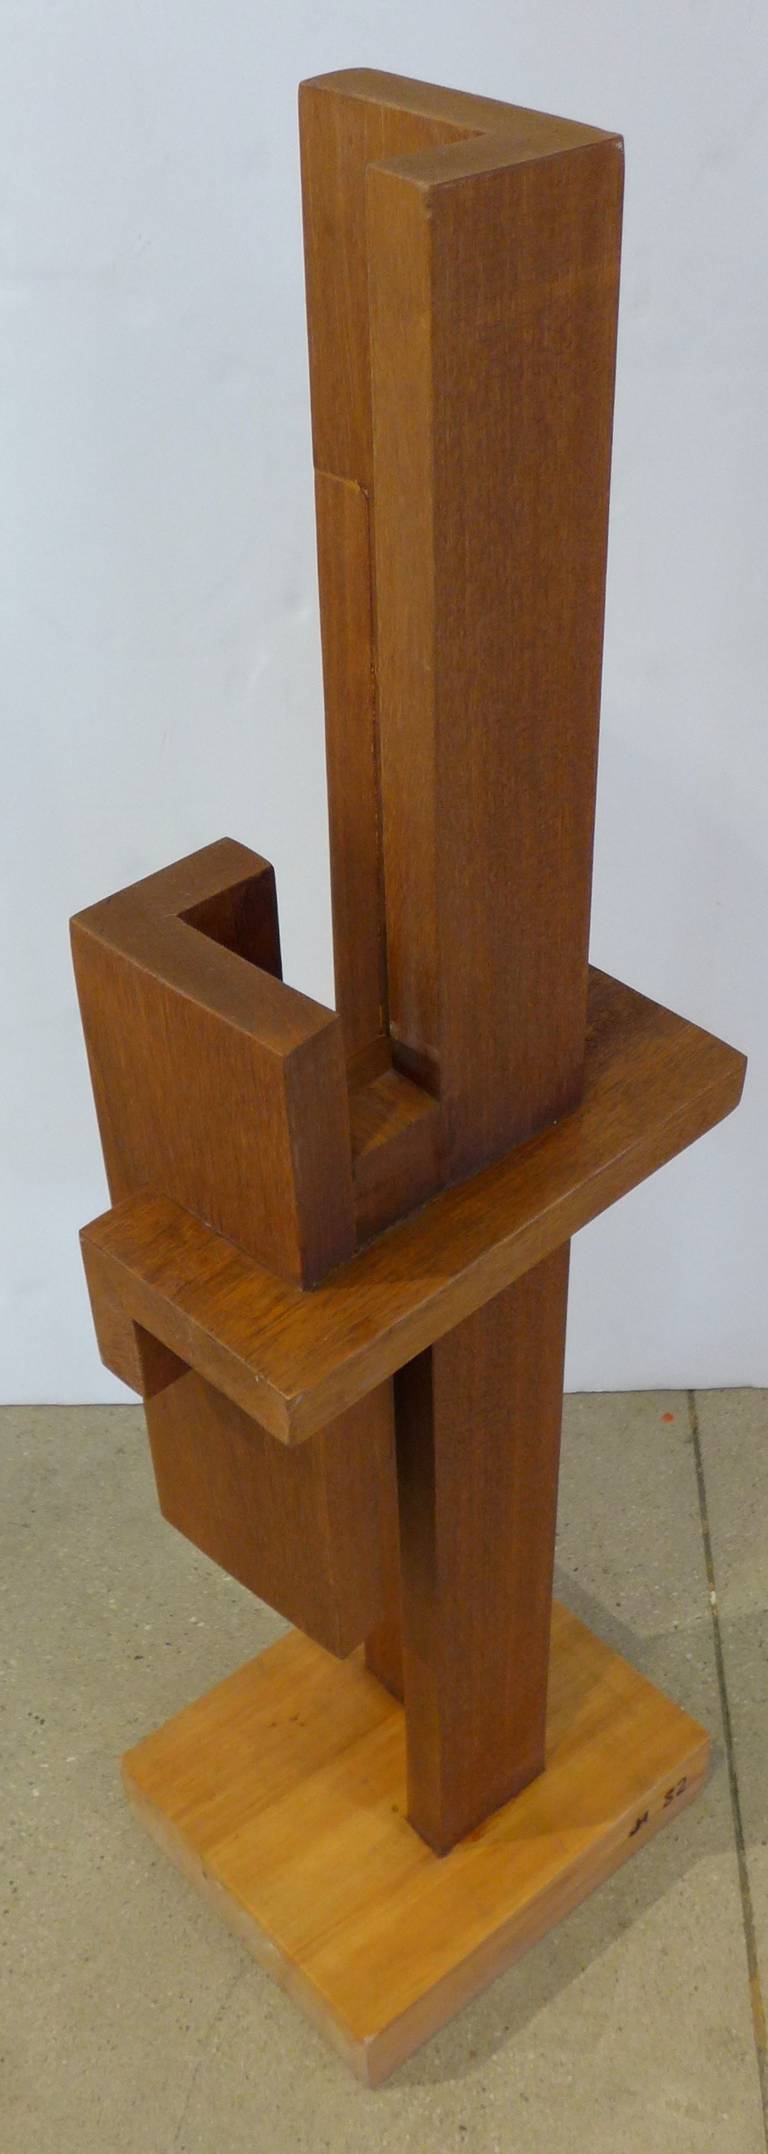 Wood Tall Constructivist Sculpture by Johannes Hoog